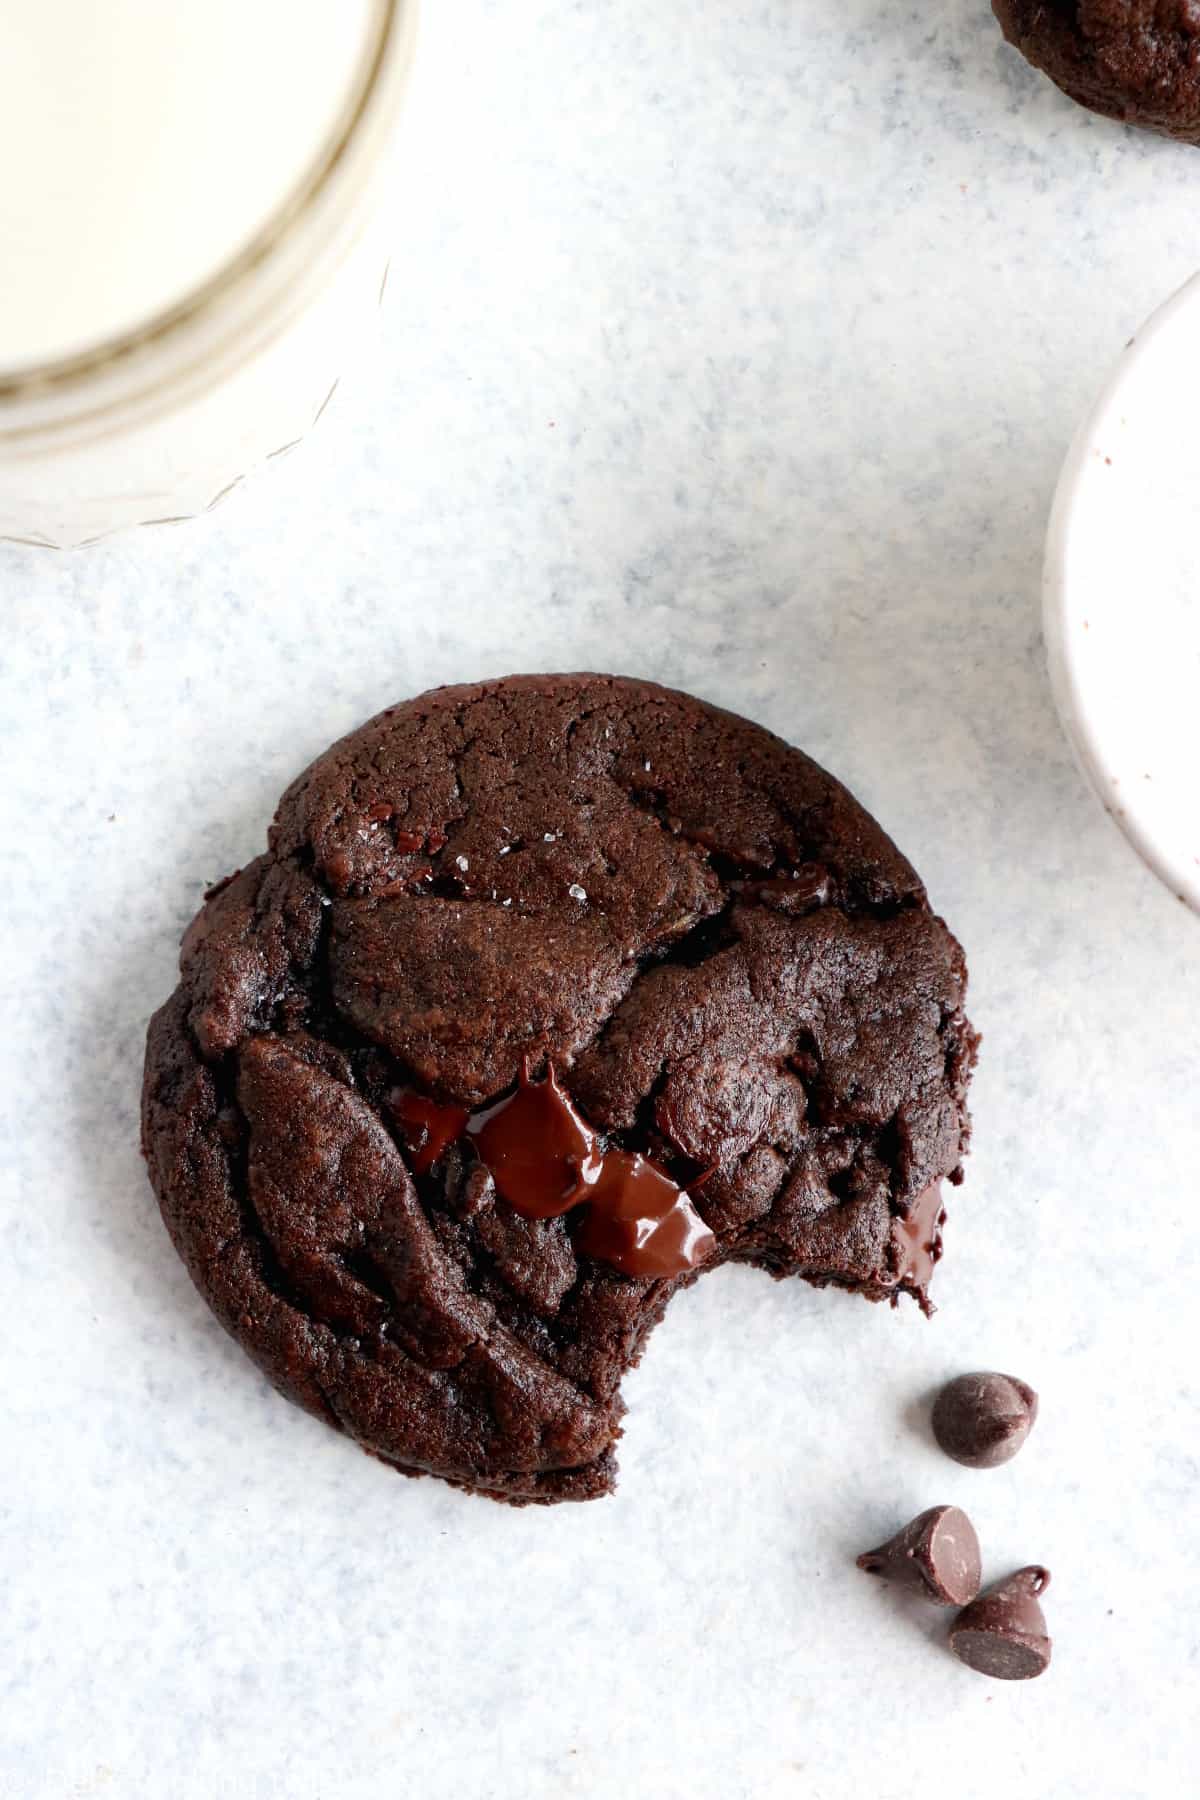 Découvrez la recette ultime de cookies tout chocolat aux pépites de chocolat. On y retrouve un coeur riche, moelleux et légèrement croustillant sous la langue, avec une intense saveur chocolatée doublée par des pépites de chocolat.